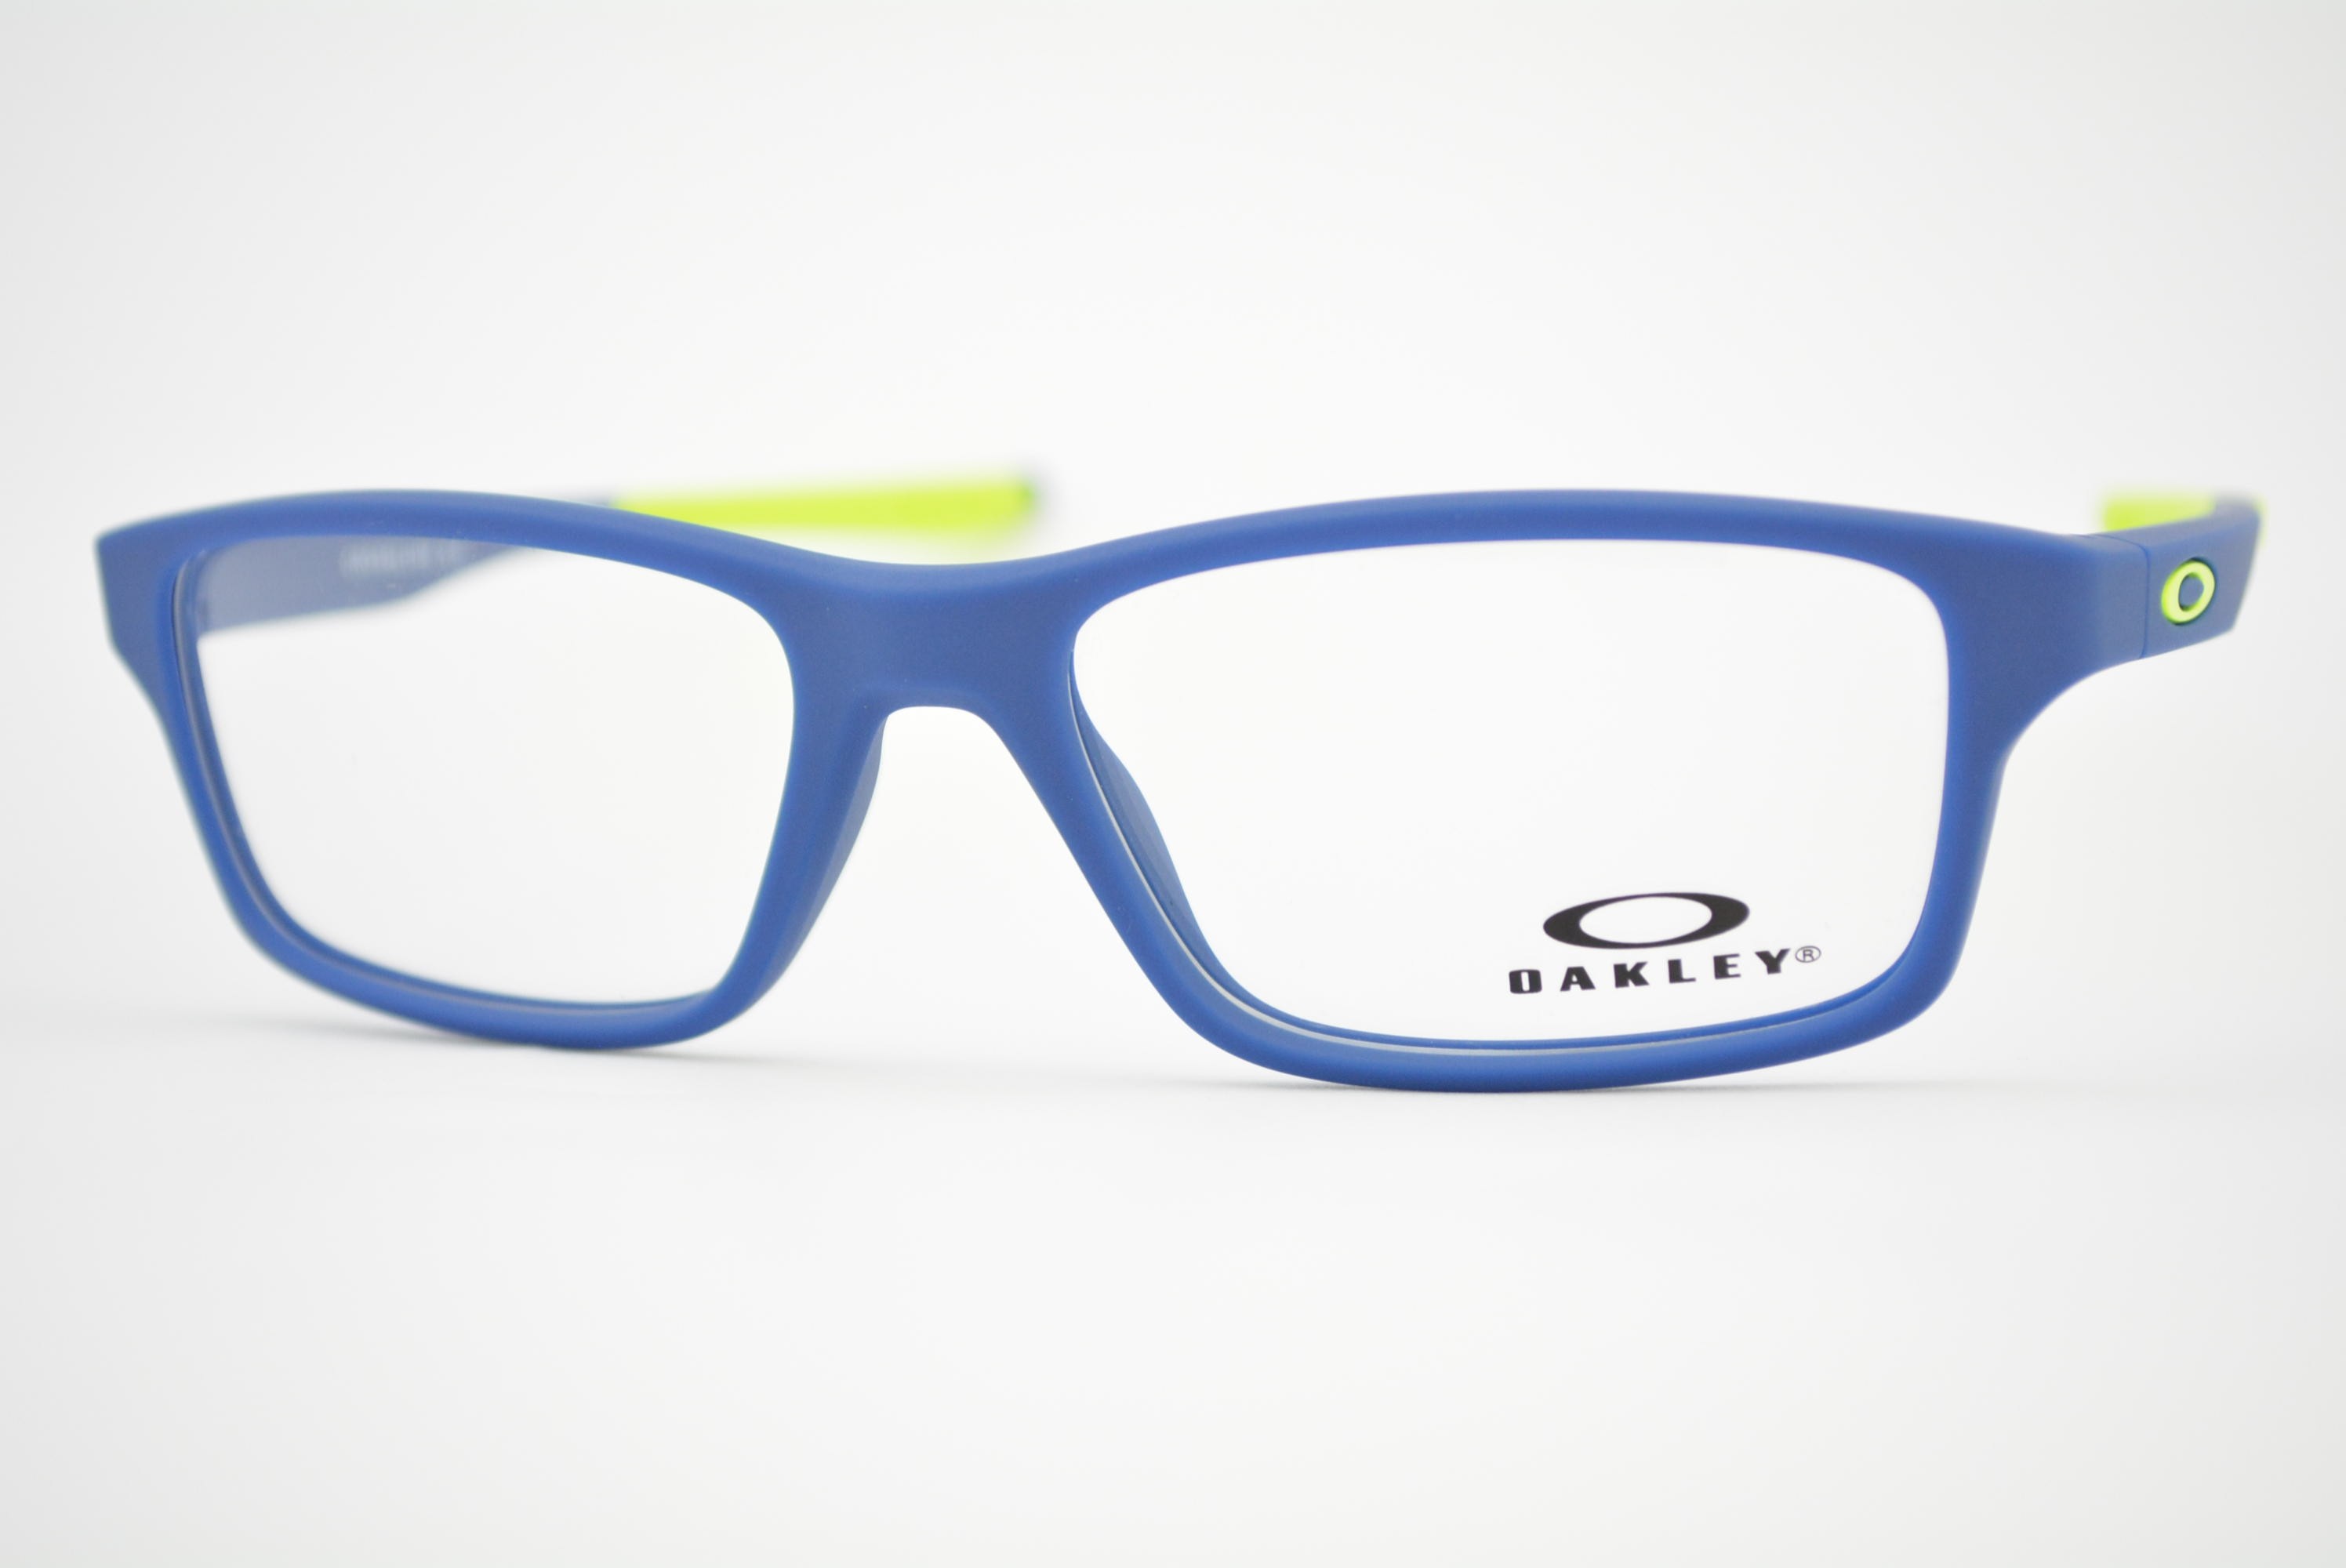 armação de óculos Oakley mod Crosslink oy8002-0451 Infantil